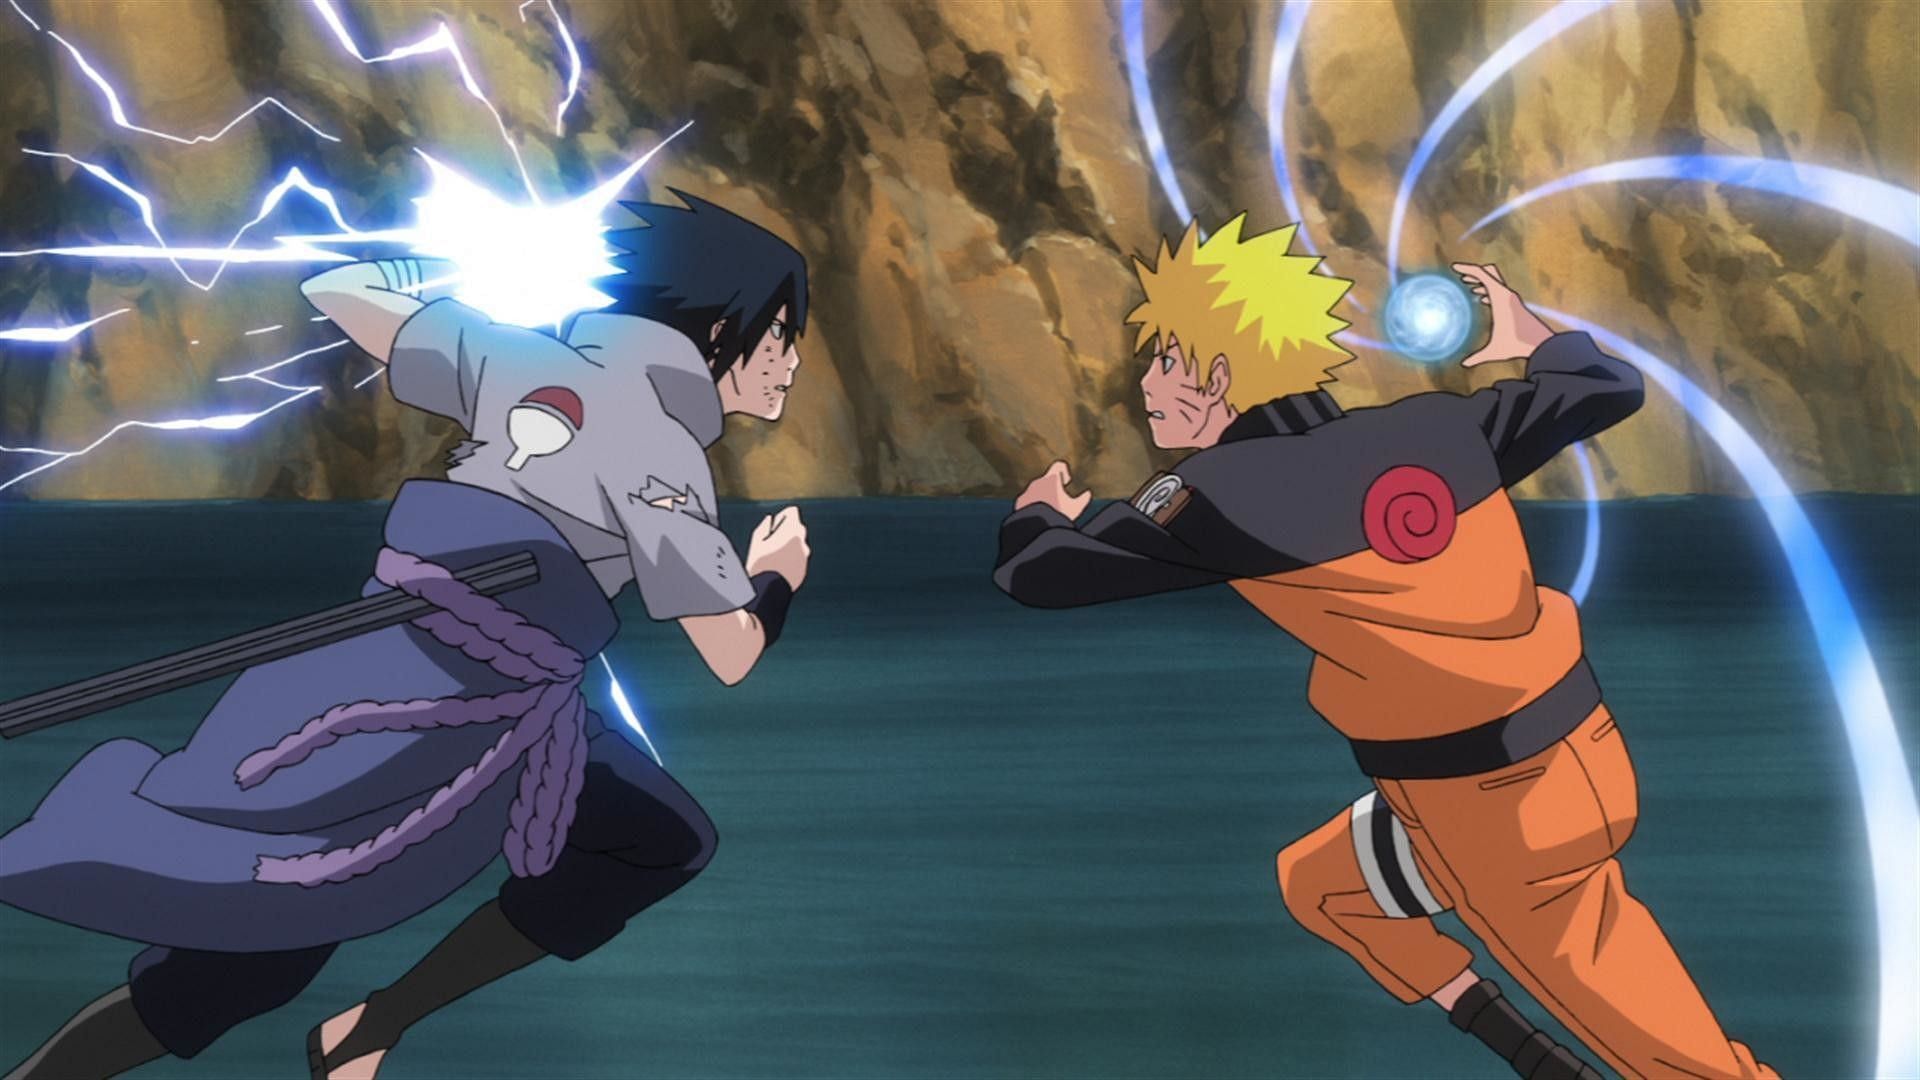 Naruto vs Sasuke (Image via Studio Pierrot)